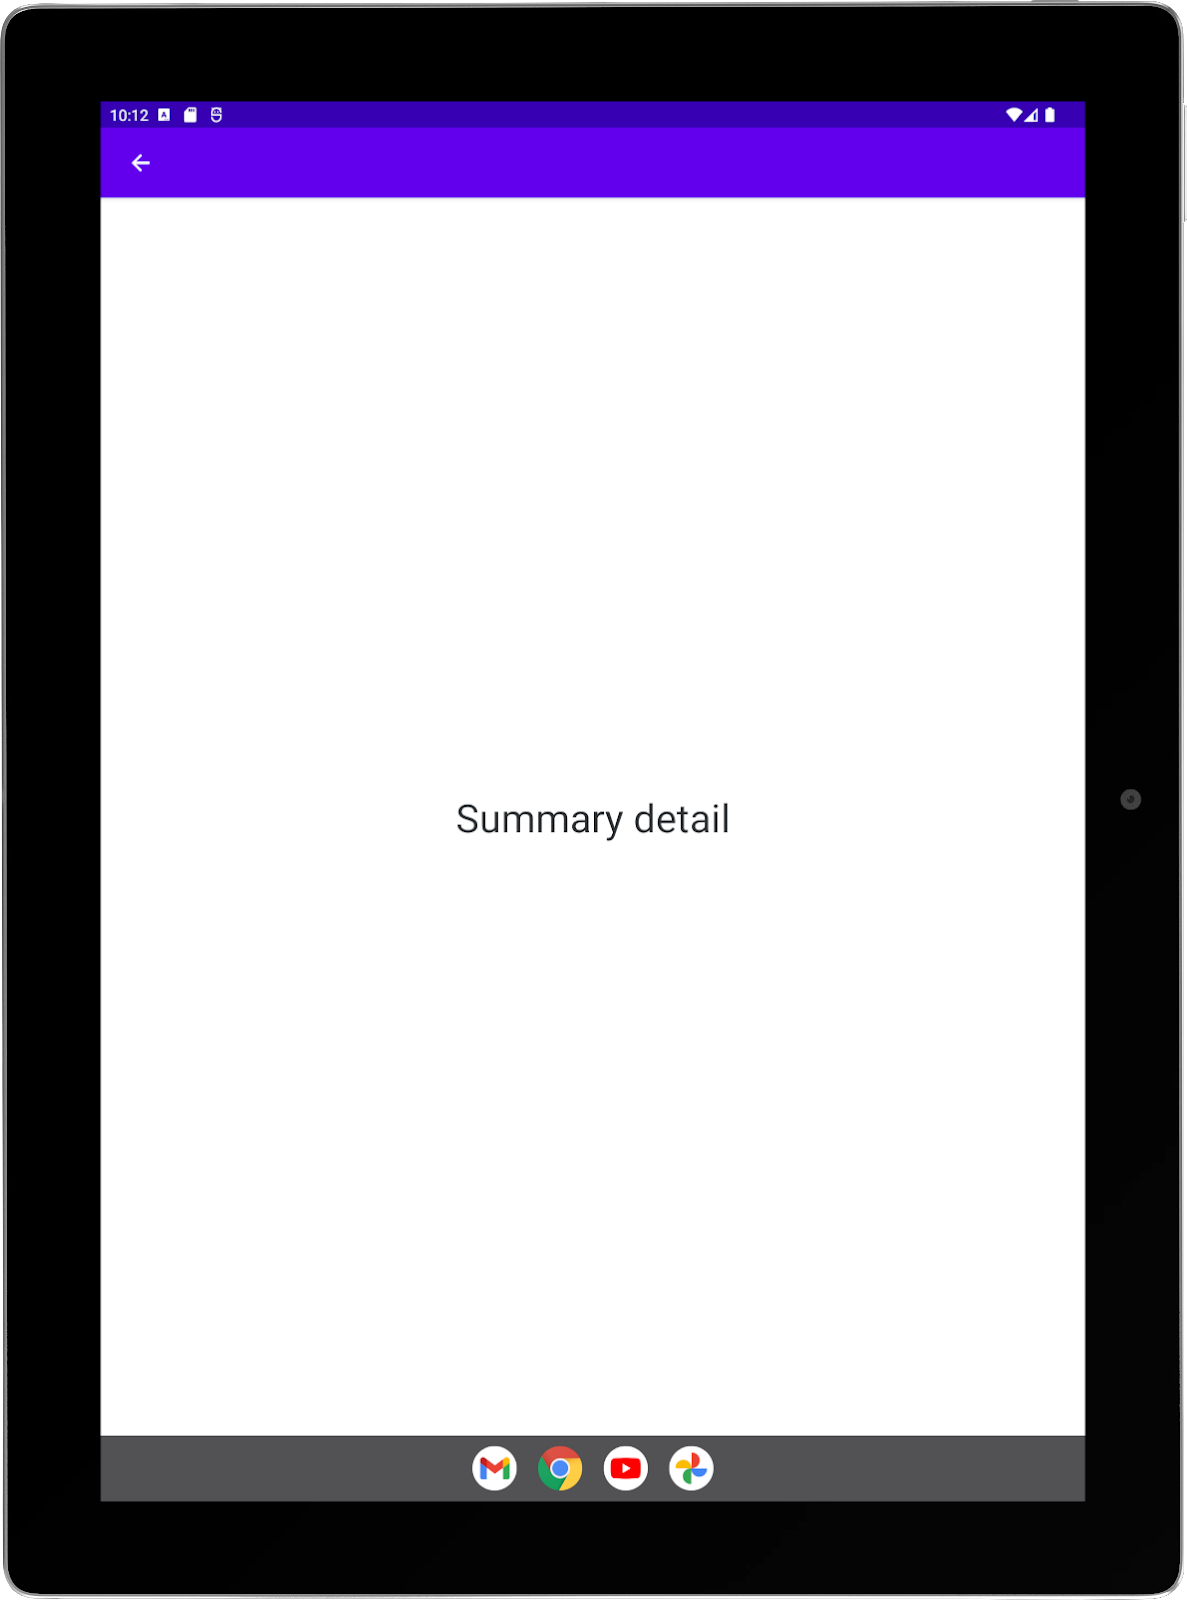 Grande tablette avec une application exemple exécutée en mode portrait Activité "Summary" (Résumé) en plein écran